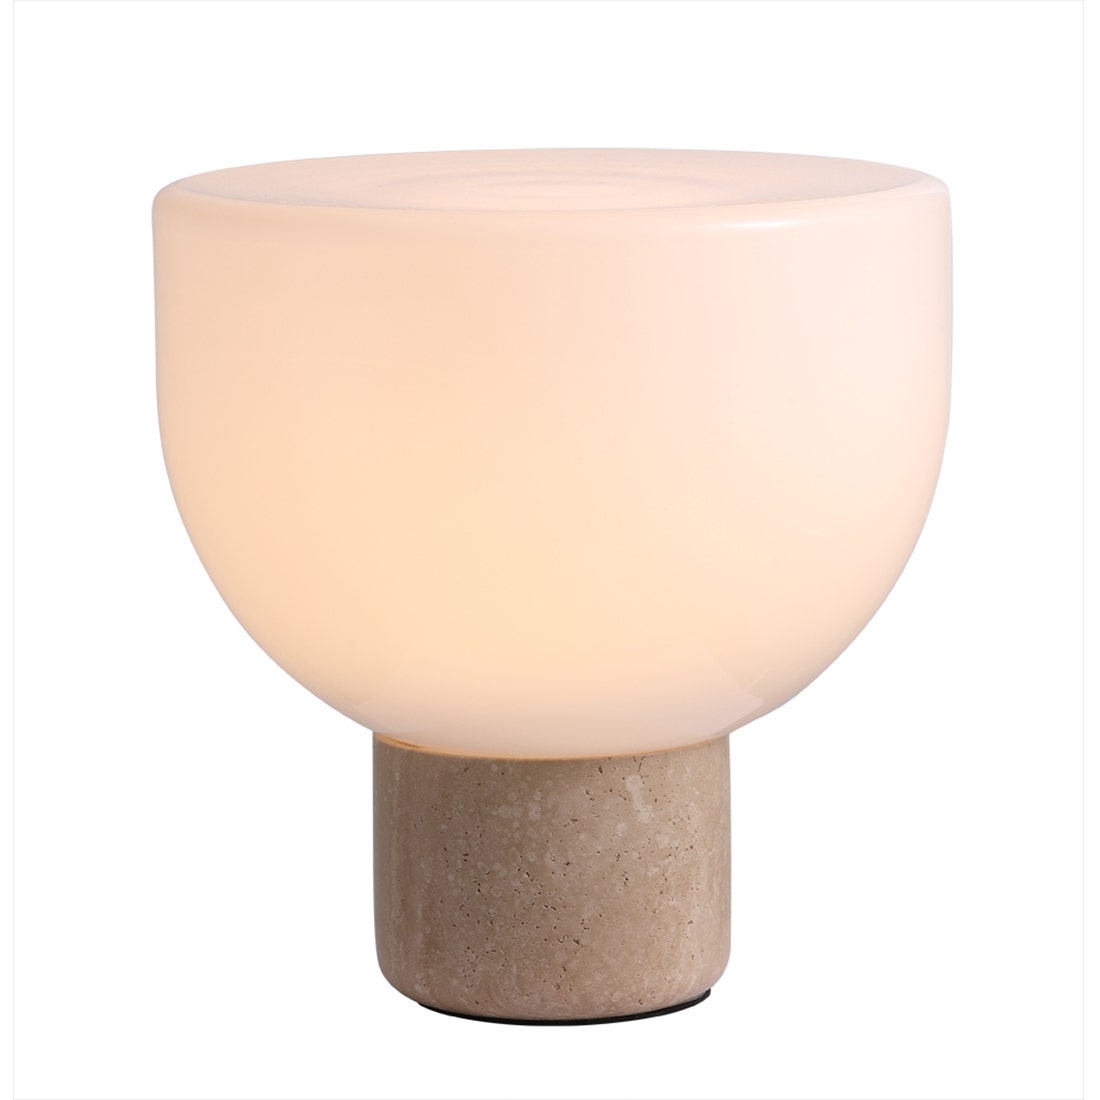 โคมไฟตั้งโต๊ะ รุ่น #MT80549-1-320 แก้วสีขาว/หิน